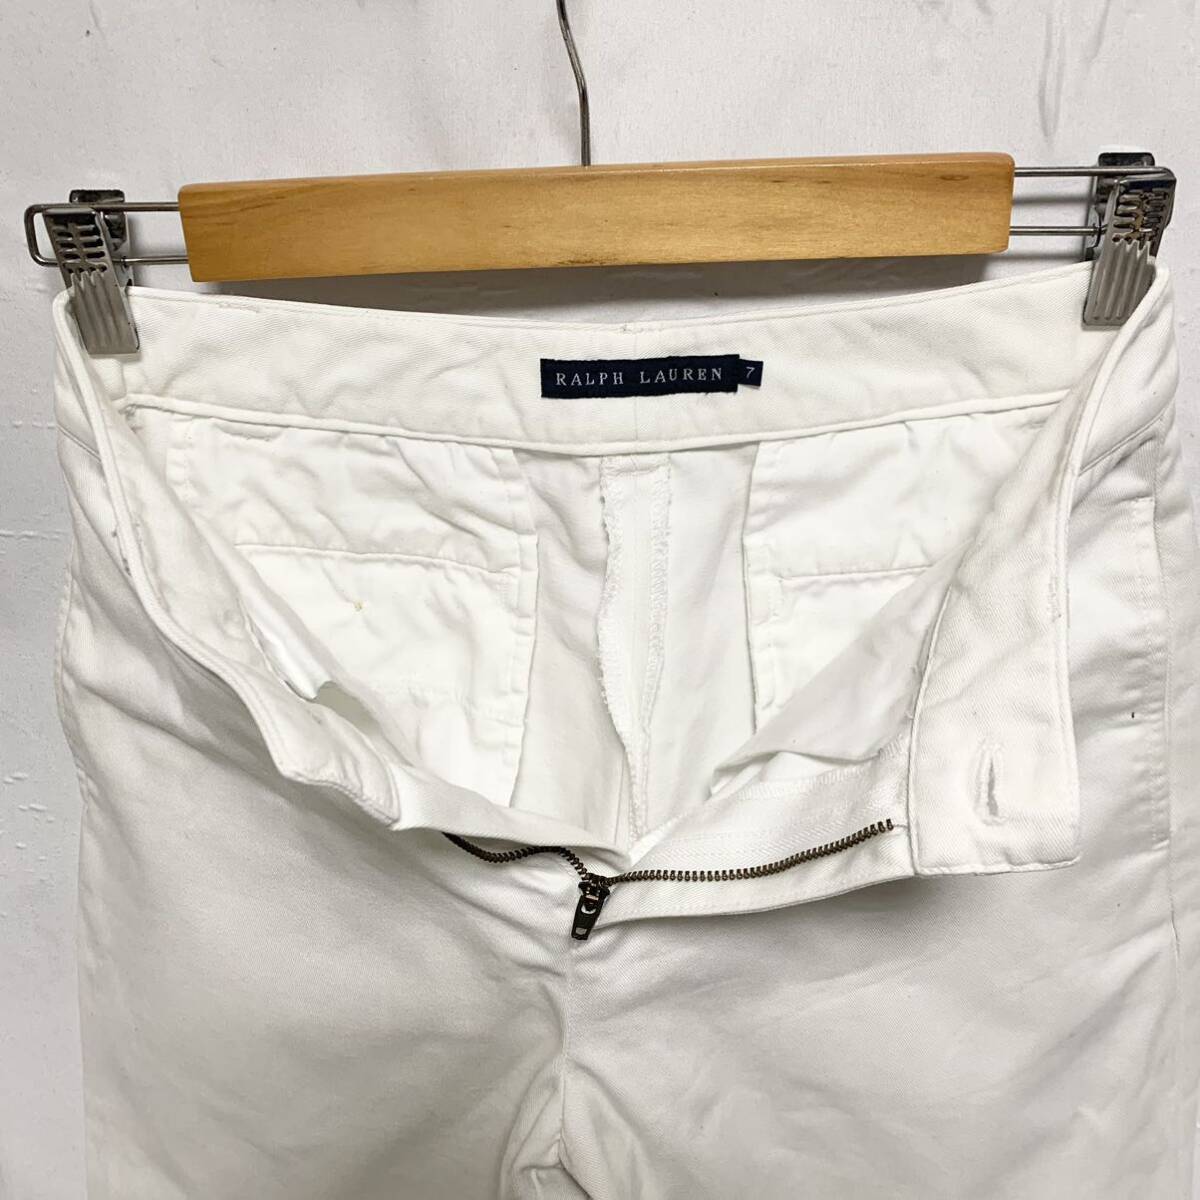 RALPH LAUREN Ralph Lauren POLO CHINO white pants chinos 7